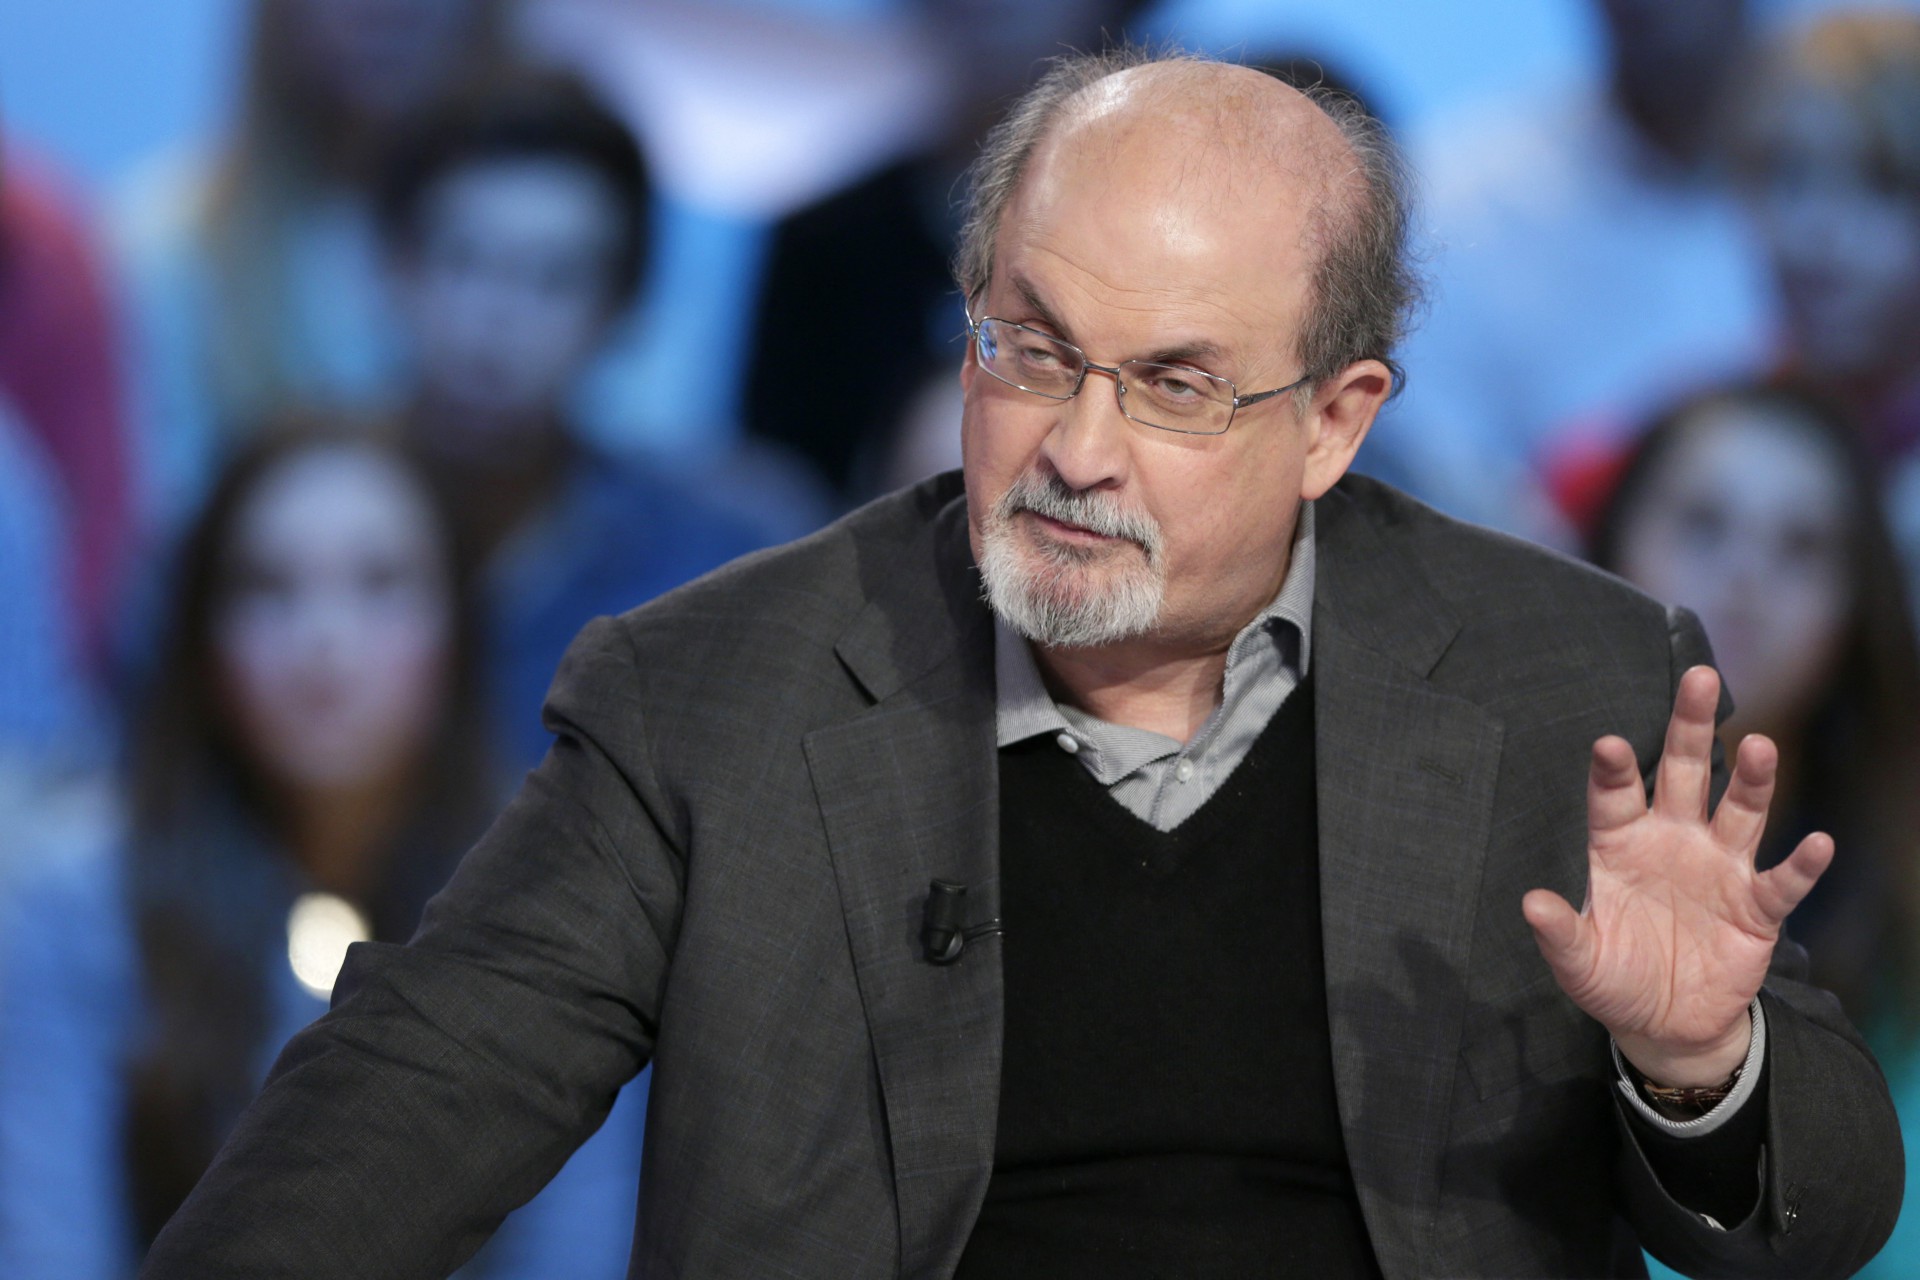 Escritor britânico Salman Rushdie é atacado em evento no estado de Nova York (Foto: Kenzo TRIBOUILLARD / AFP)